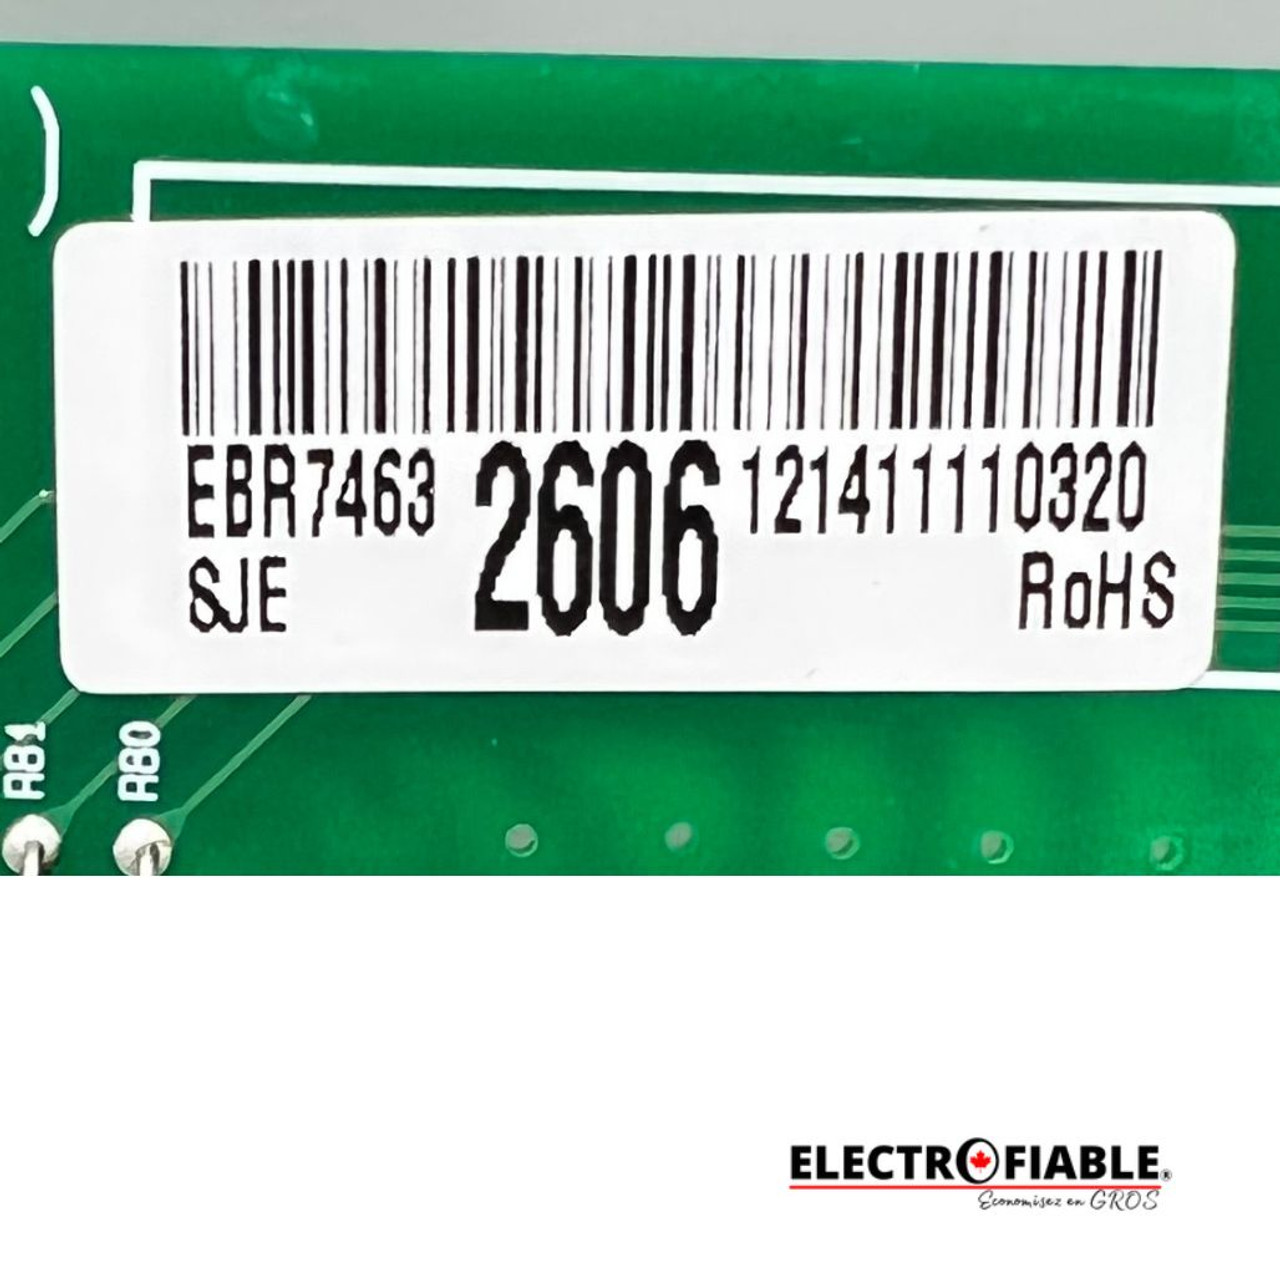 EBR74632606 Oven Control Board PCB